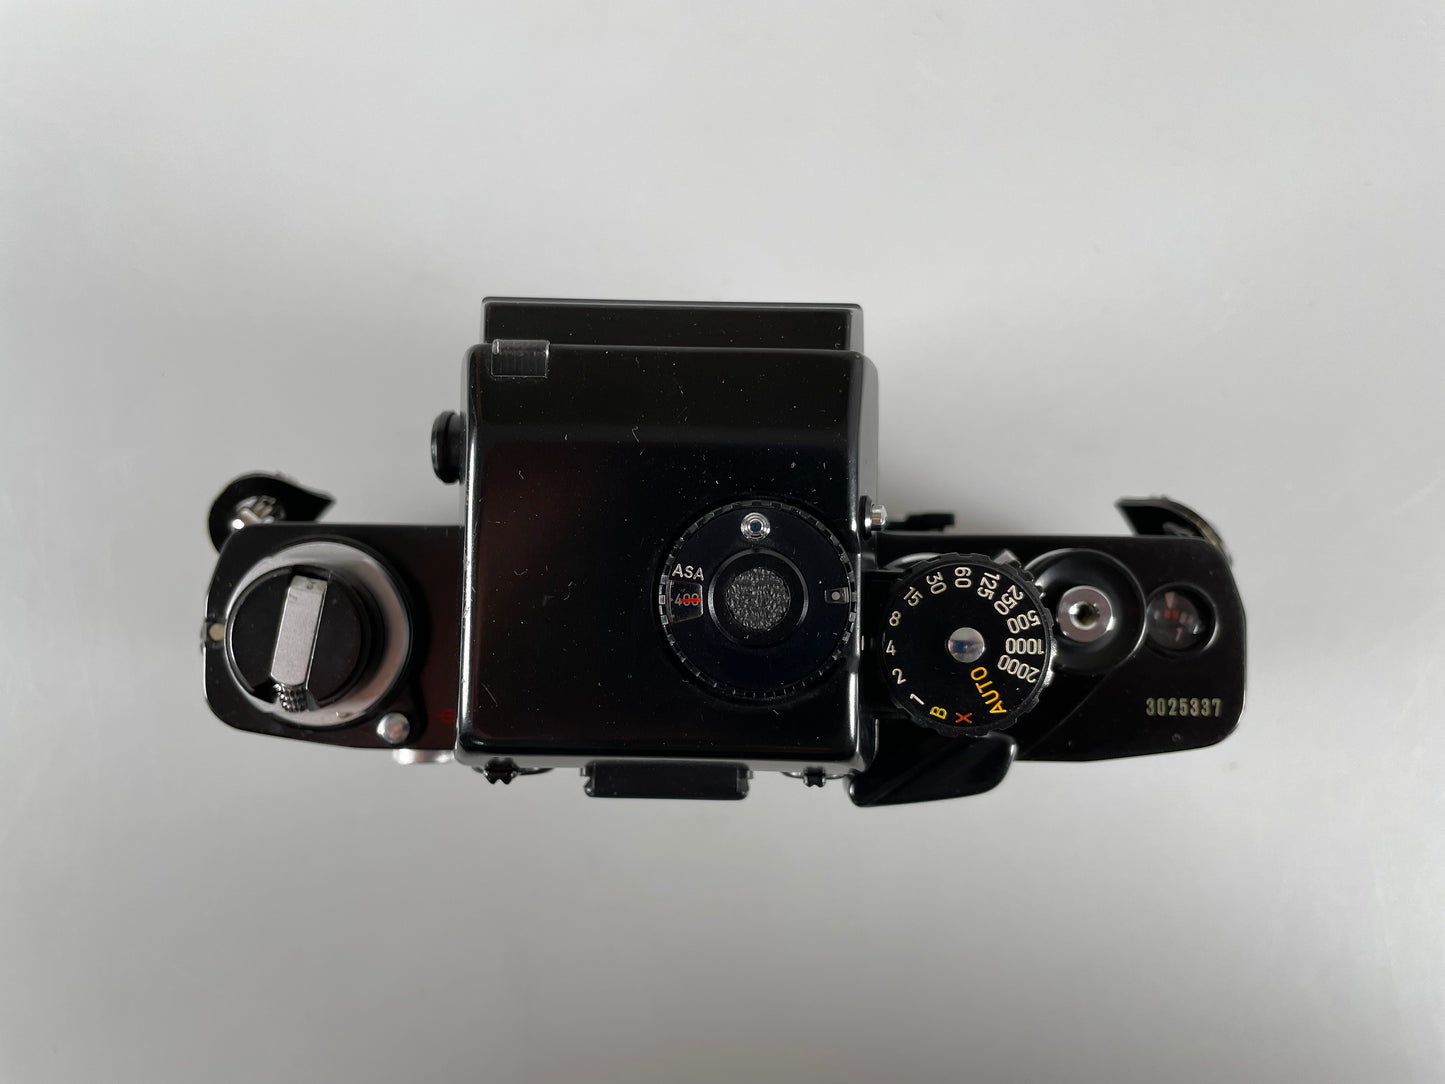 Minolta XK 35mm film Camera body Black w/ RARE AE-S meter finder